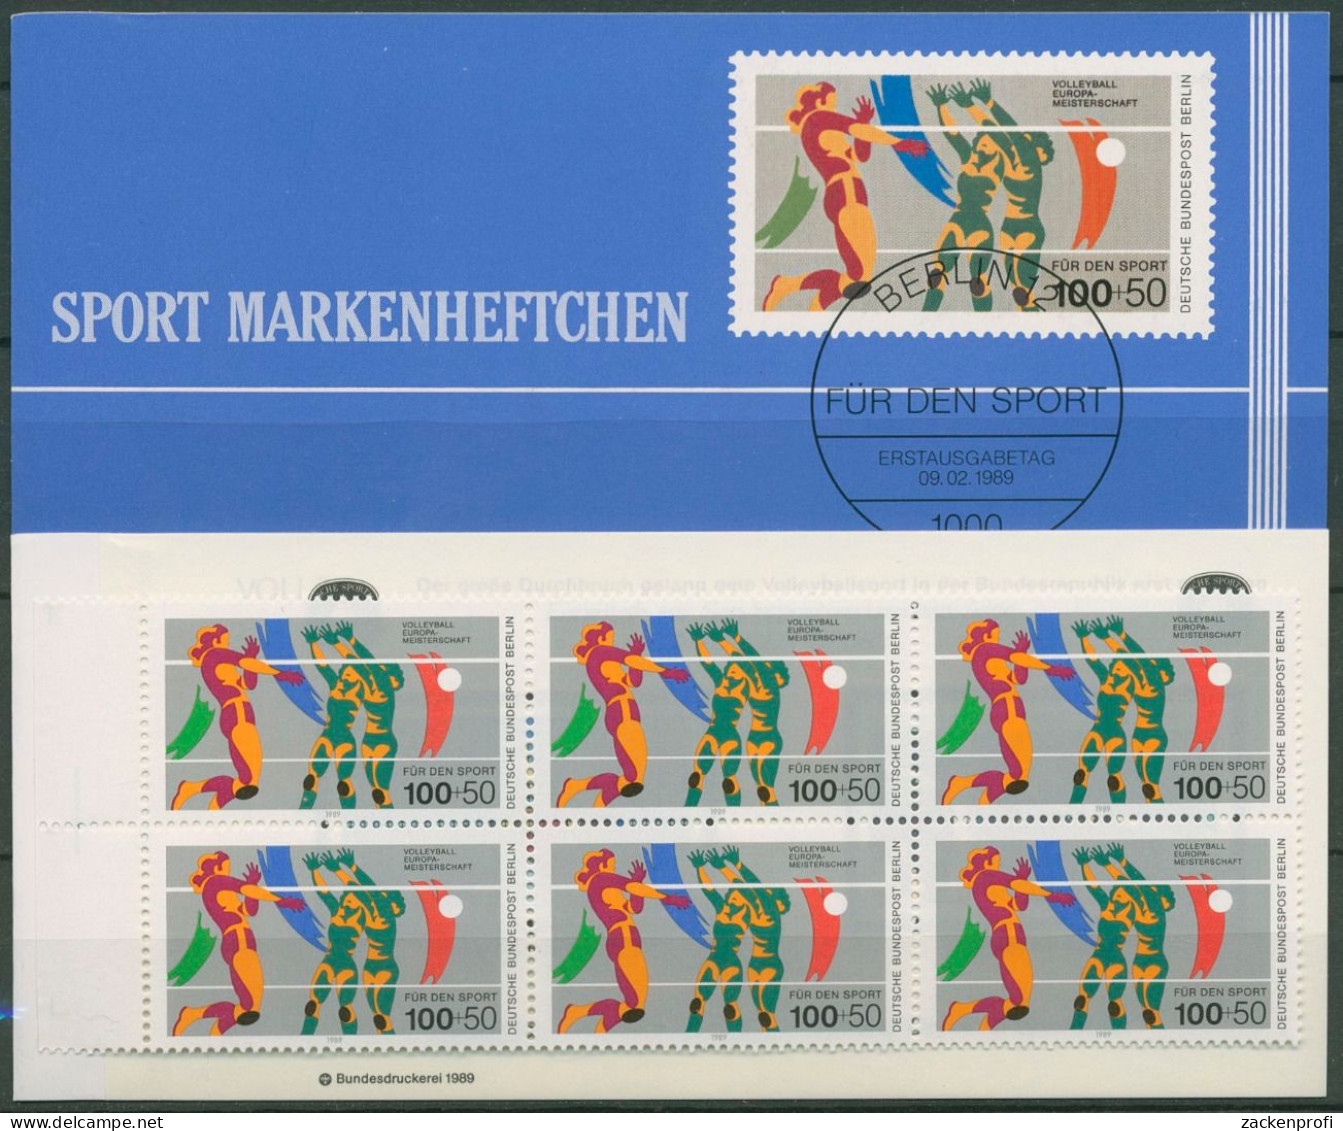 Berlin Deutsche Sporthilfe 1989 Markenheftchen SMH 11 (836) Postfrisch (C99137) - Booklets